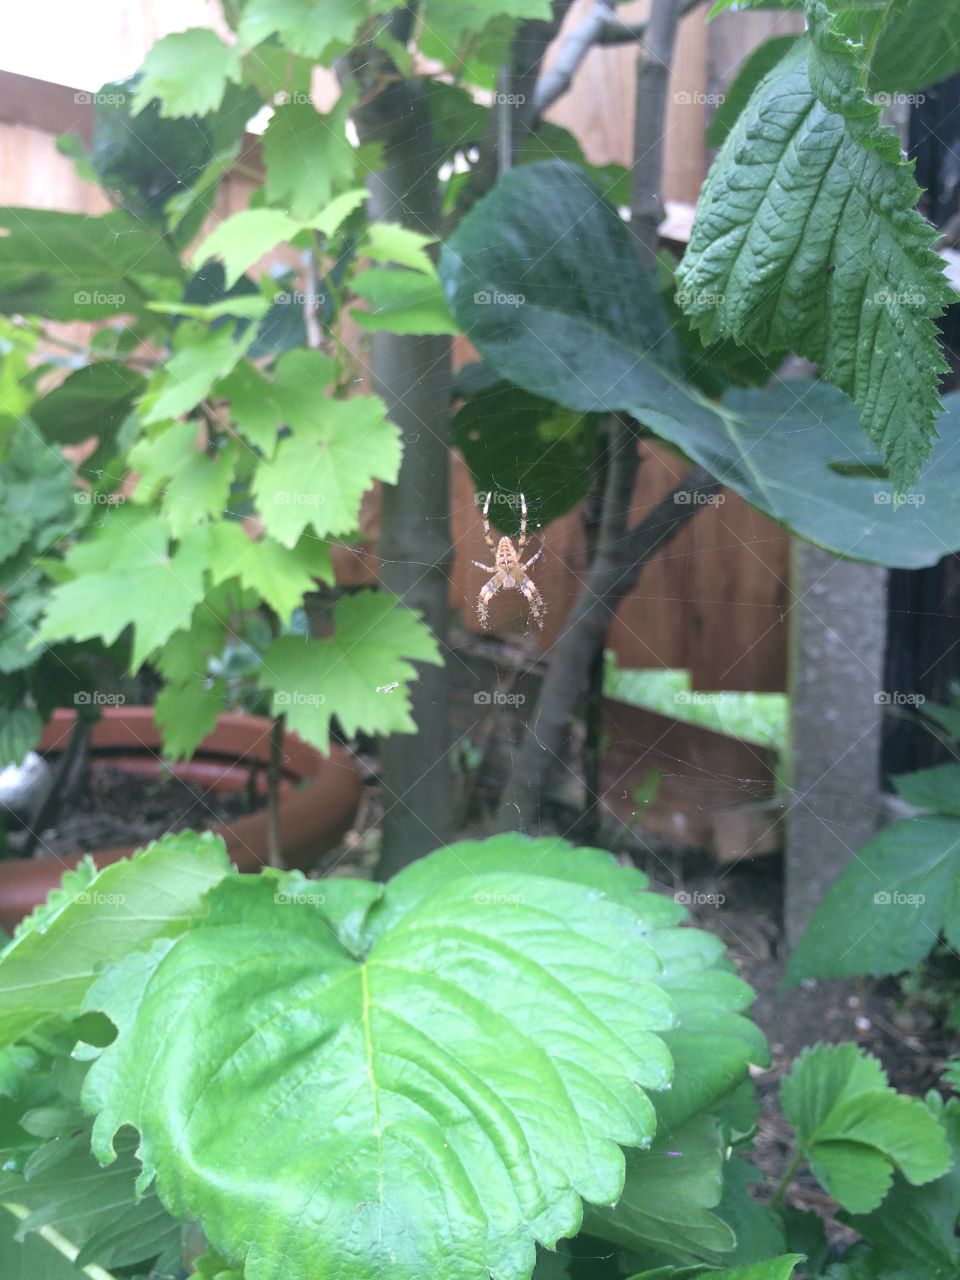 Garden spider 